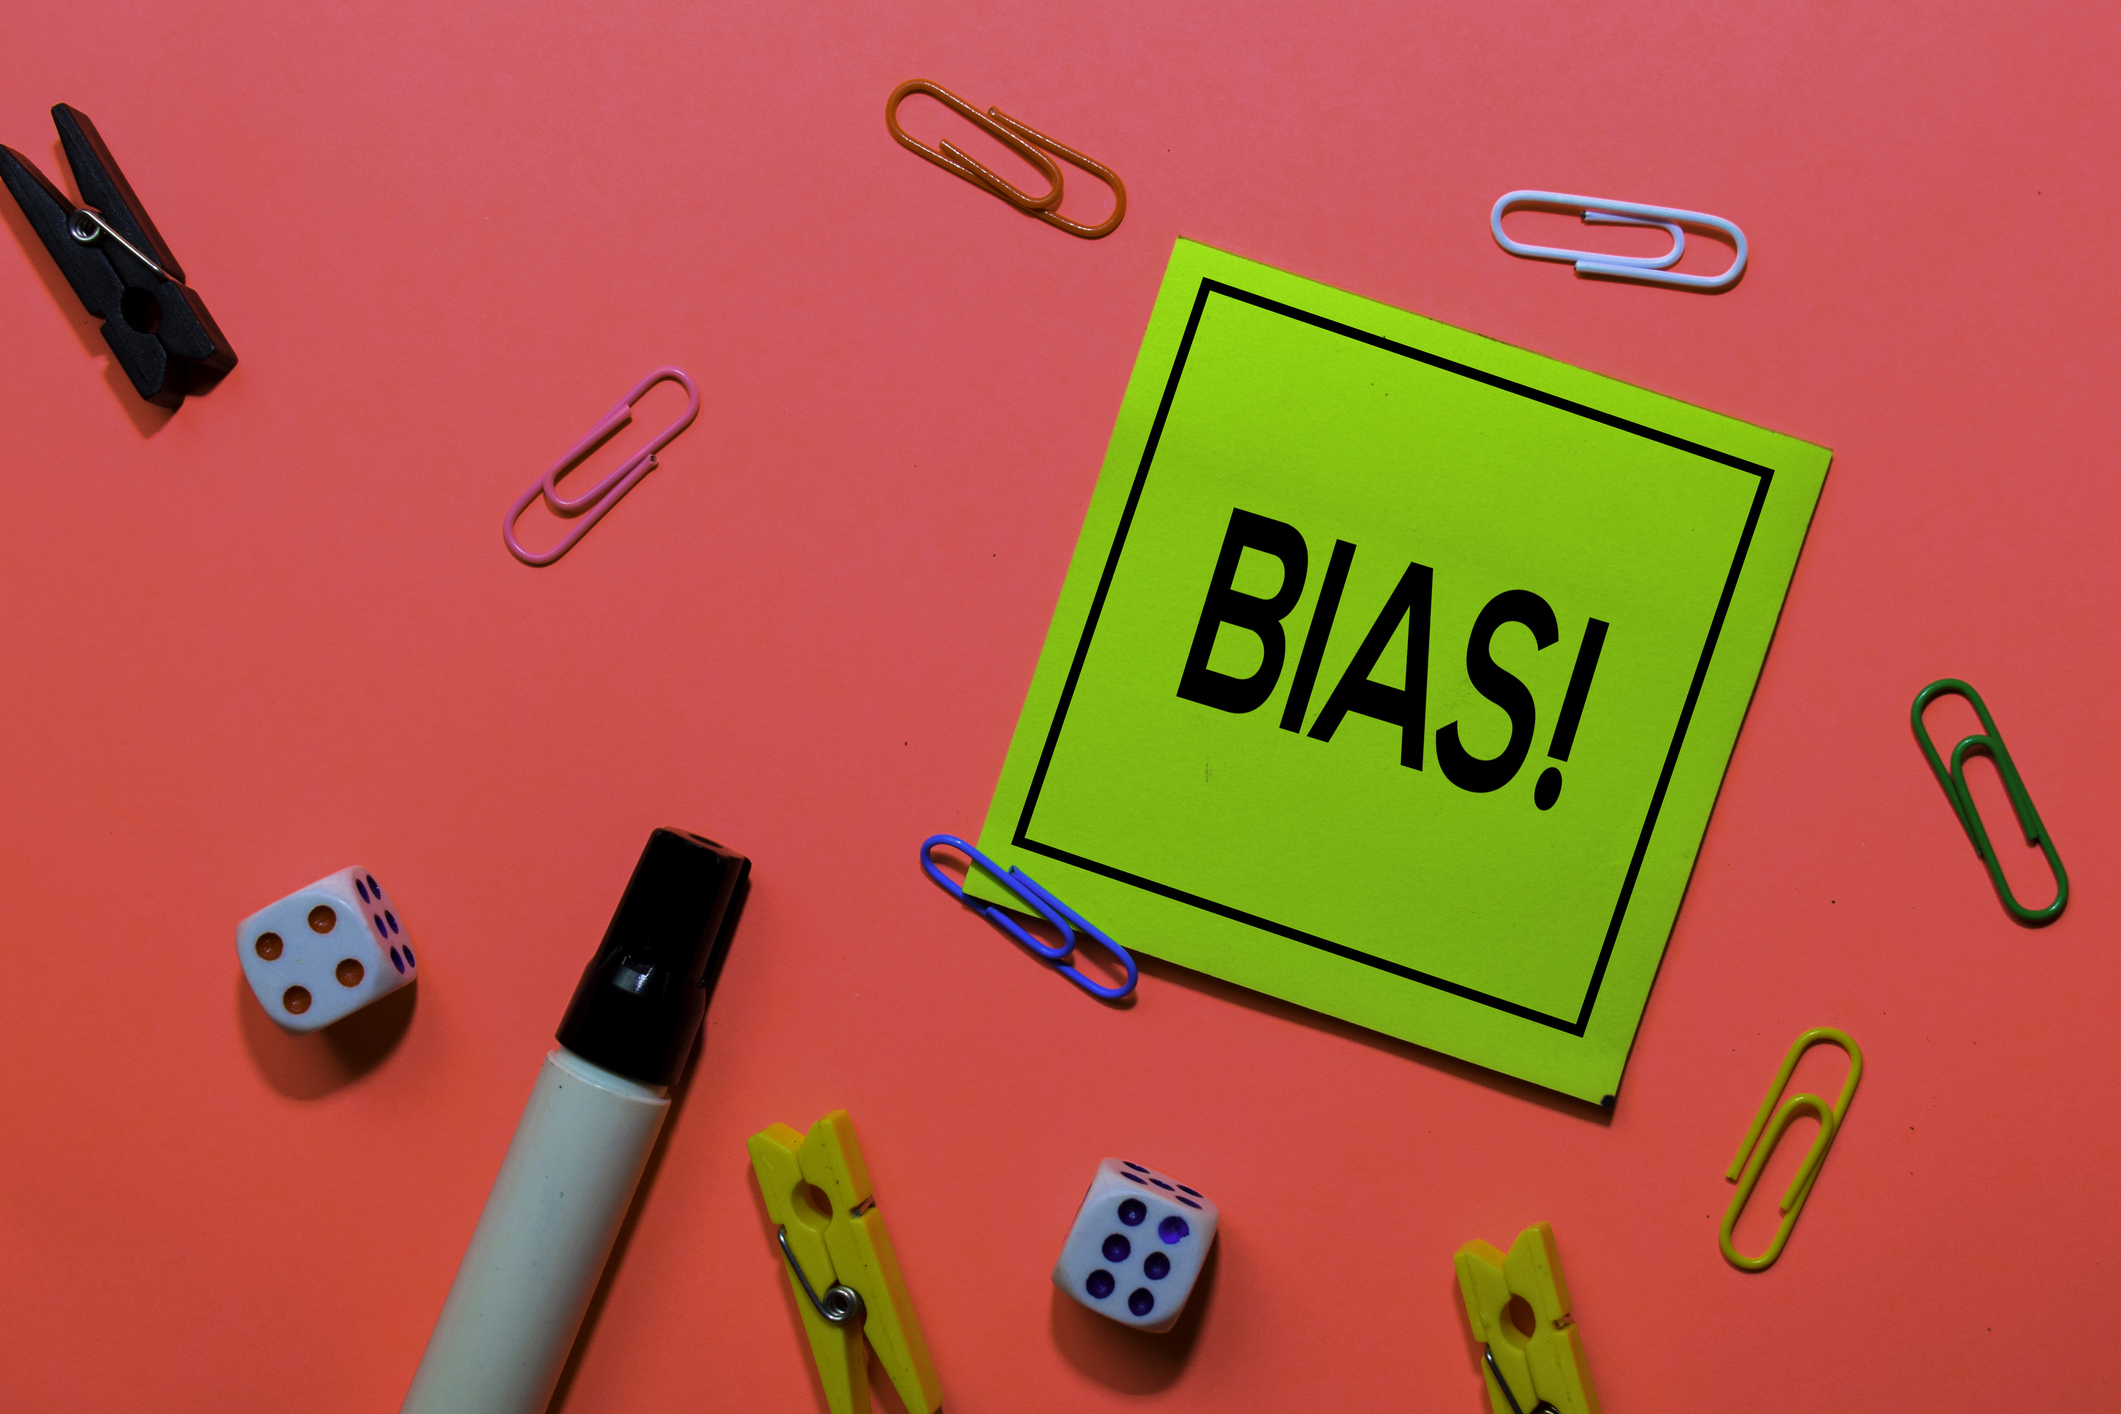 Unconscious bias